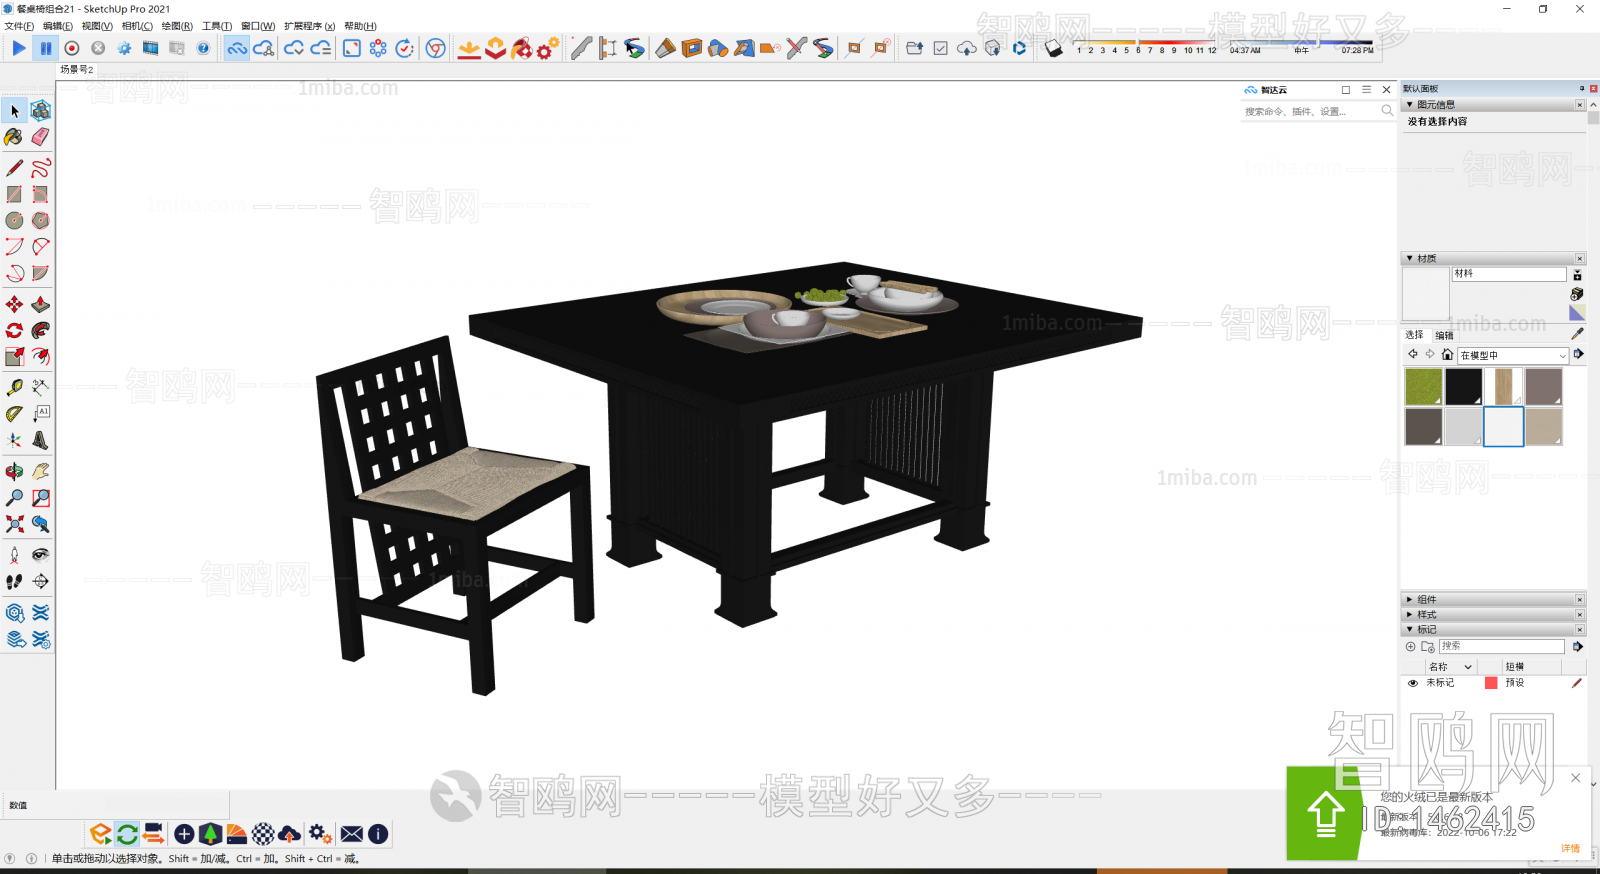 新中式餐桌椅组合